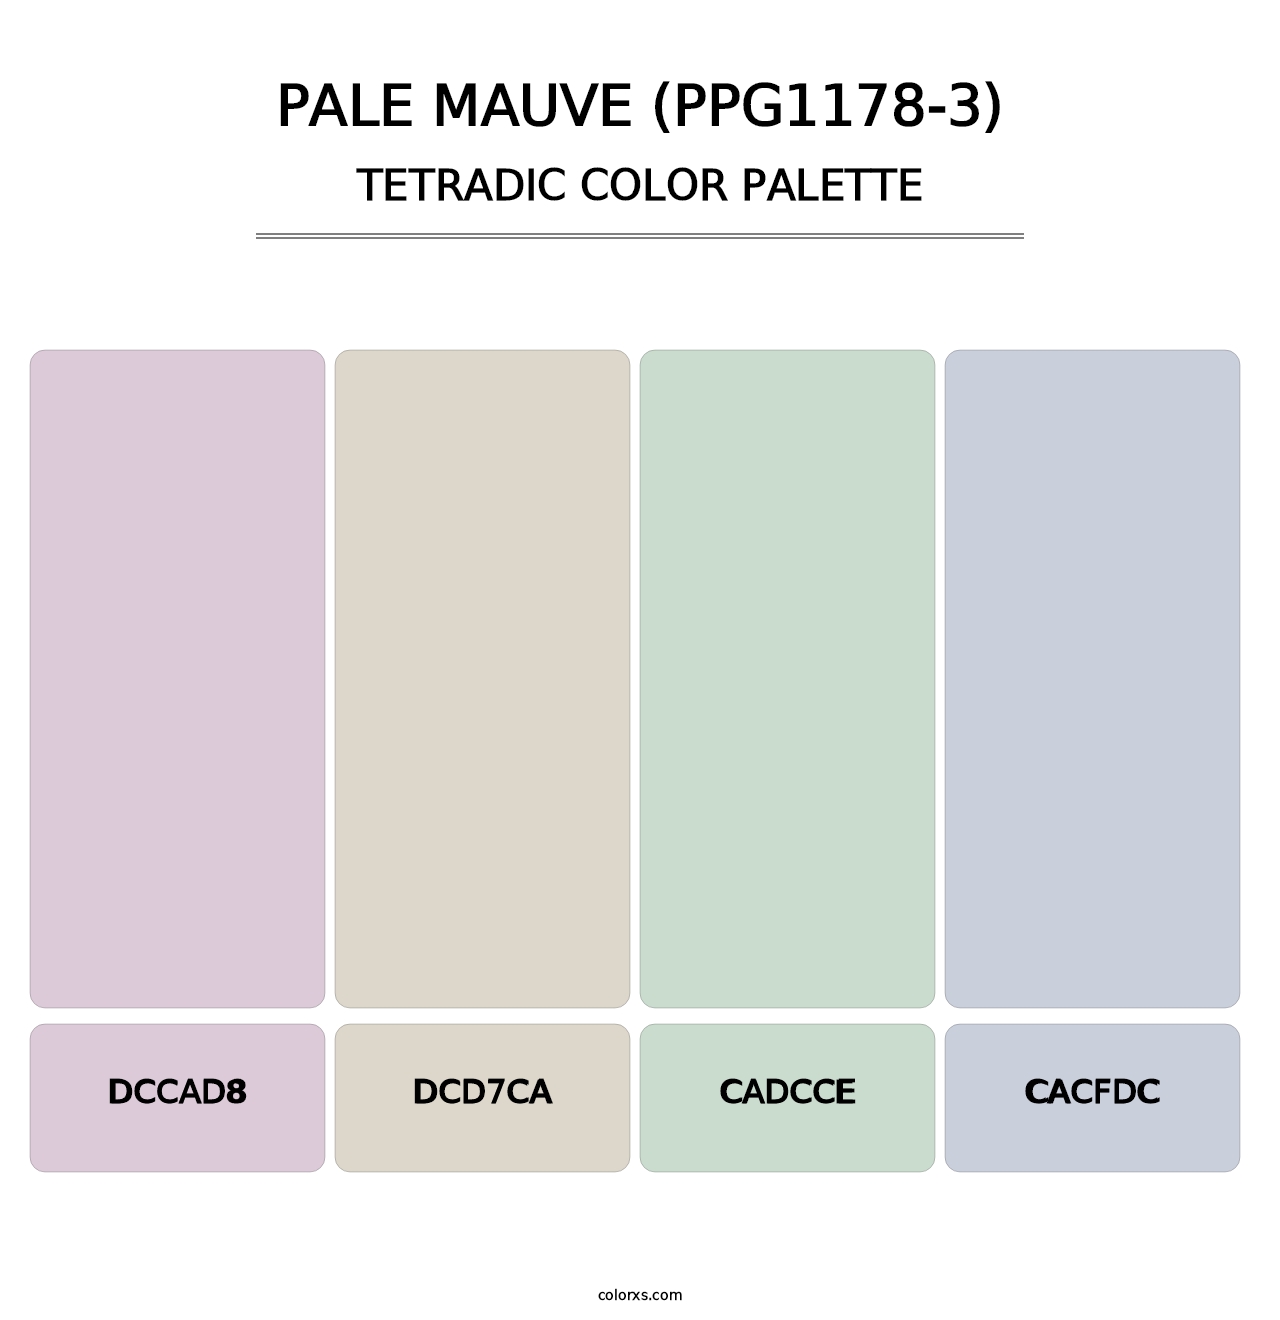 Pale Mauve (PPG1178-3) - Tetradic Color Palette